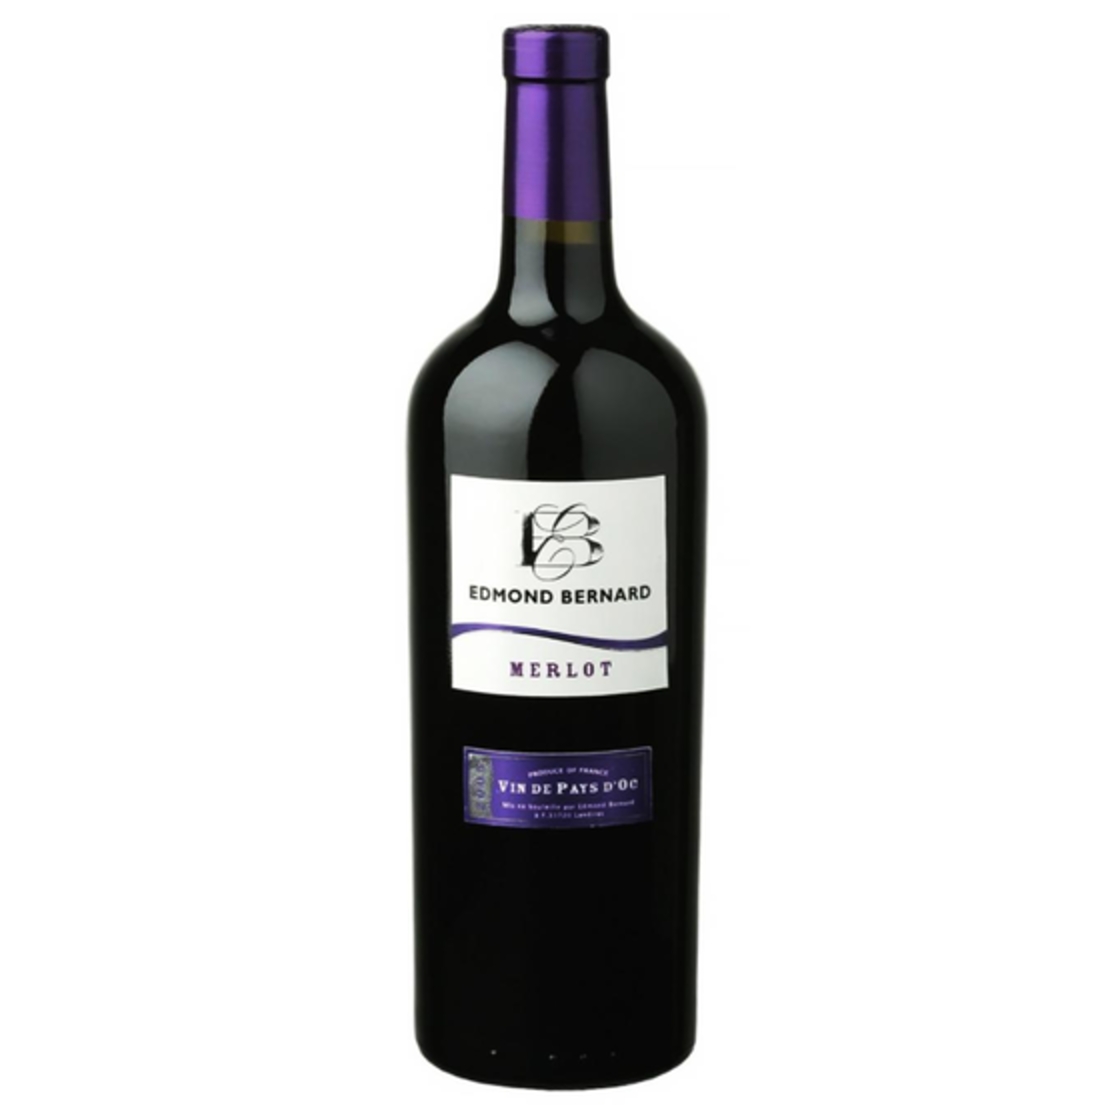 יין צרפתי אדמונד ברנארד מרלו אדום יבש 750 מ